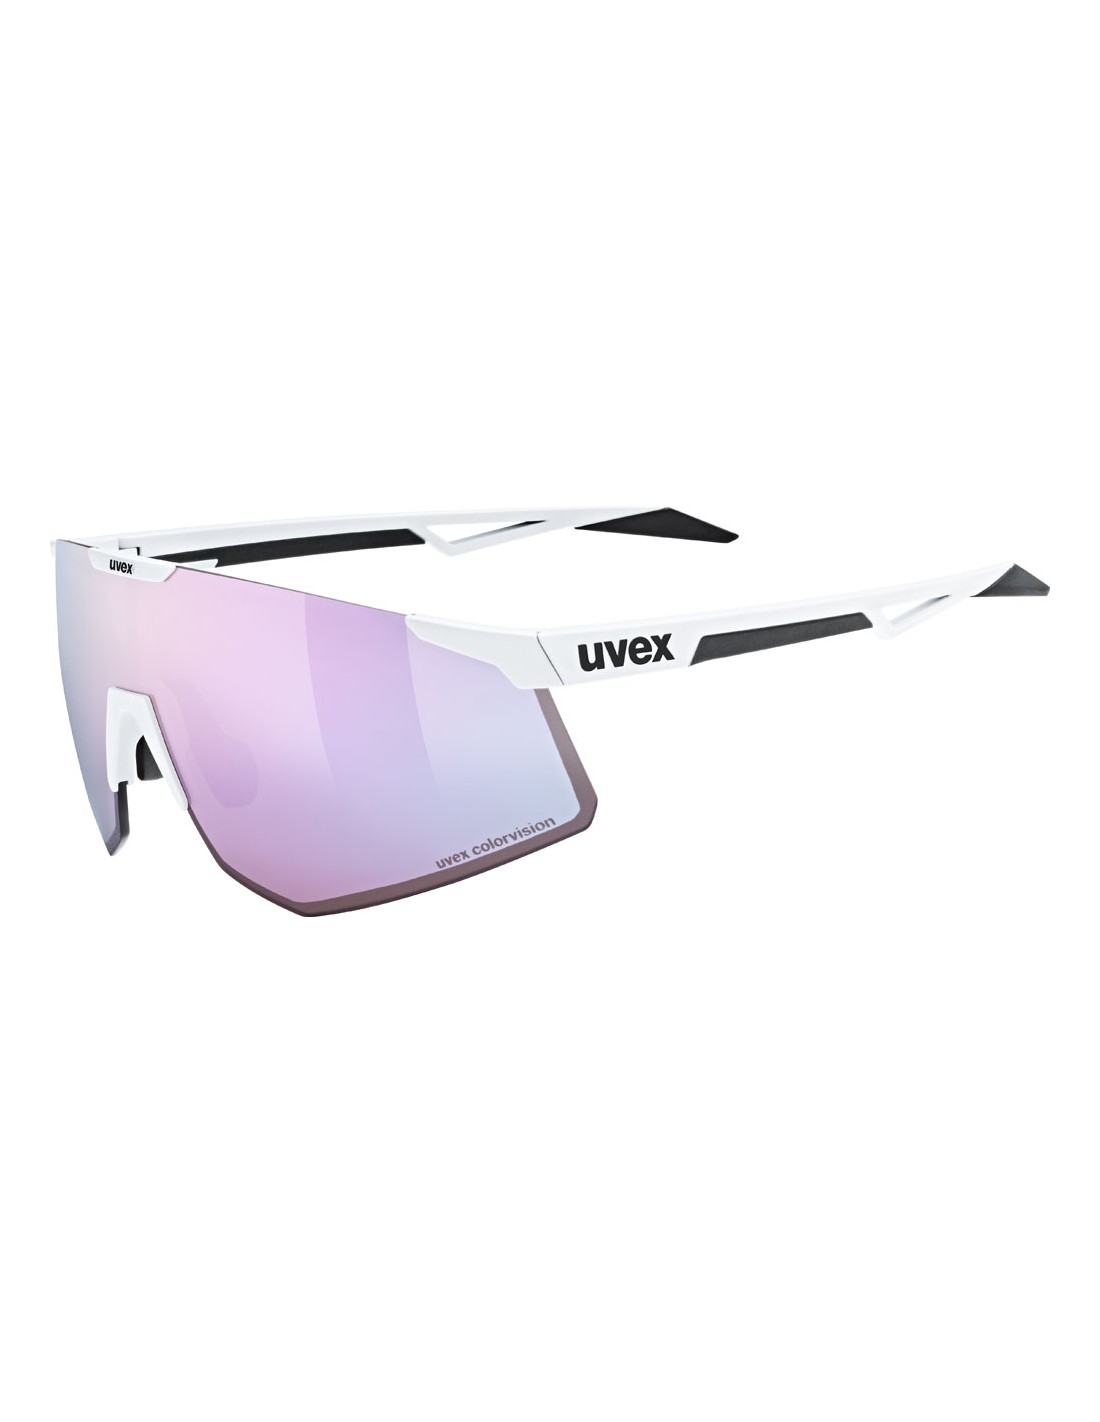 Uvex Sportbrille Pace Perform CV, white matt, uvex colorvision mirror pink Cat. 3 pushy pink von Uvex